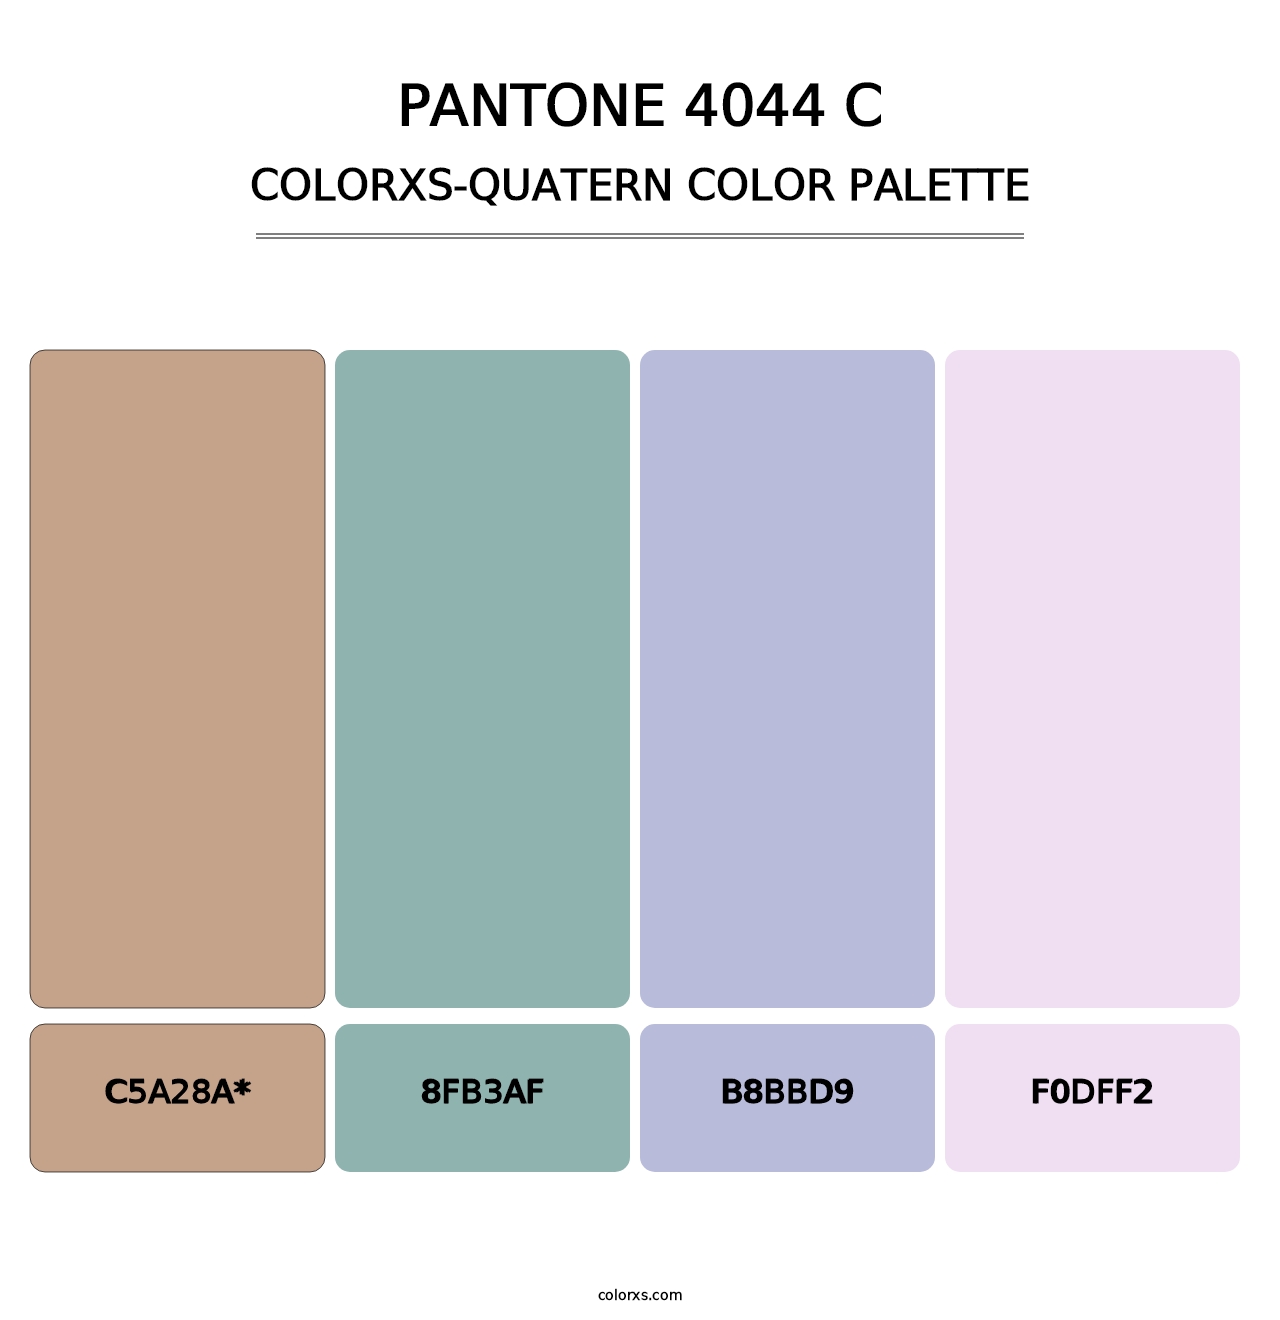 PANTONE 4044 C - Colorxs Quatern Palette